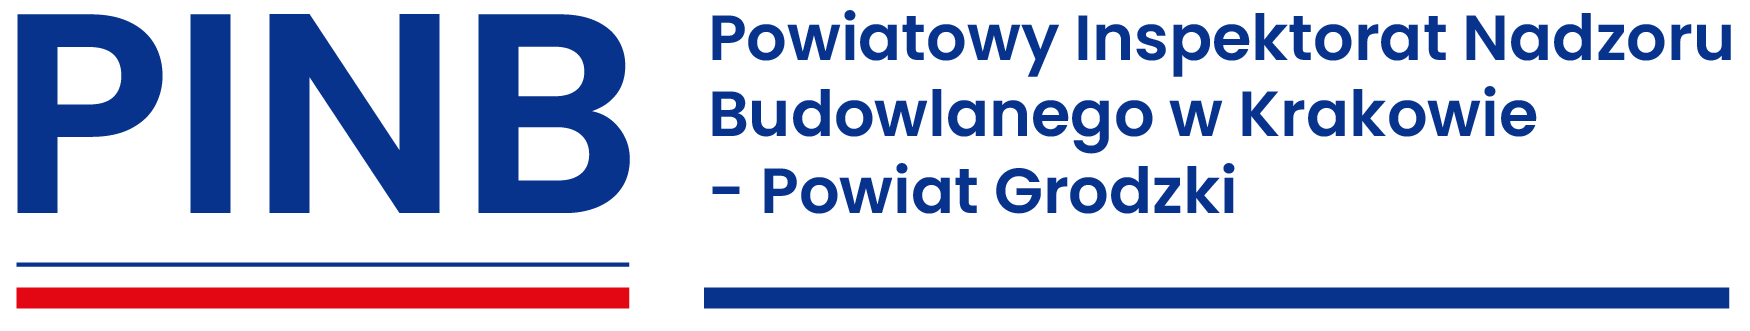 Logo Powiatowy Inspektorat Nadzoru Budowlanego w Krakowie